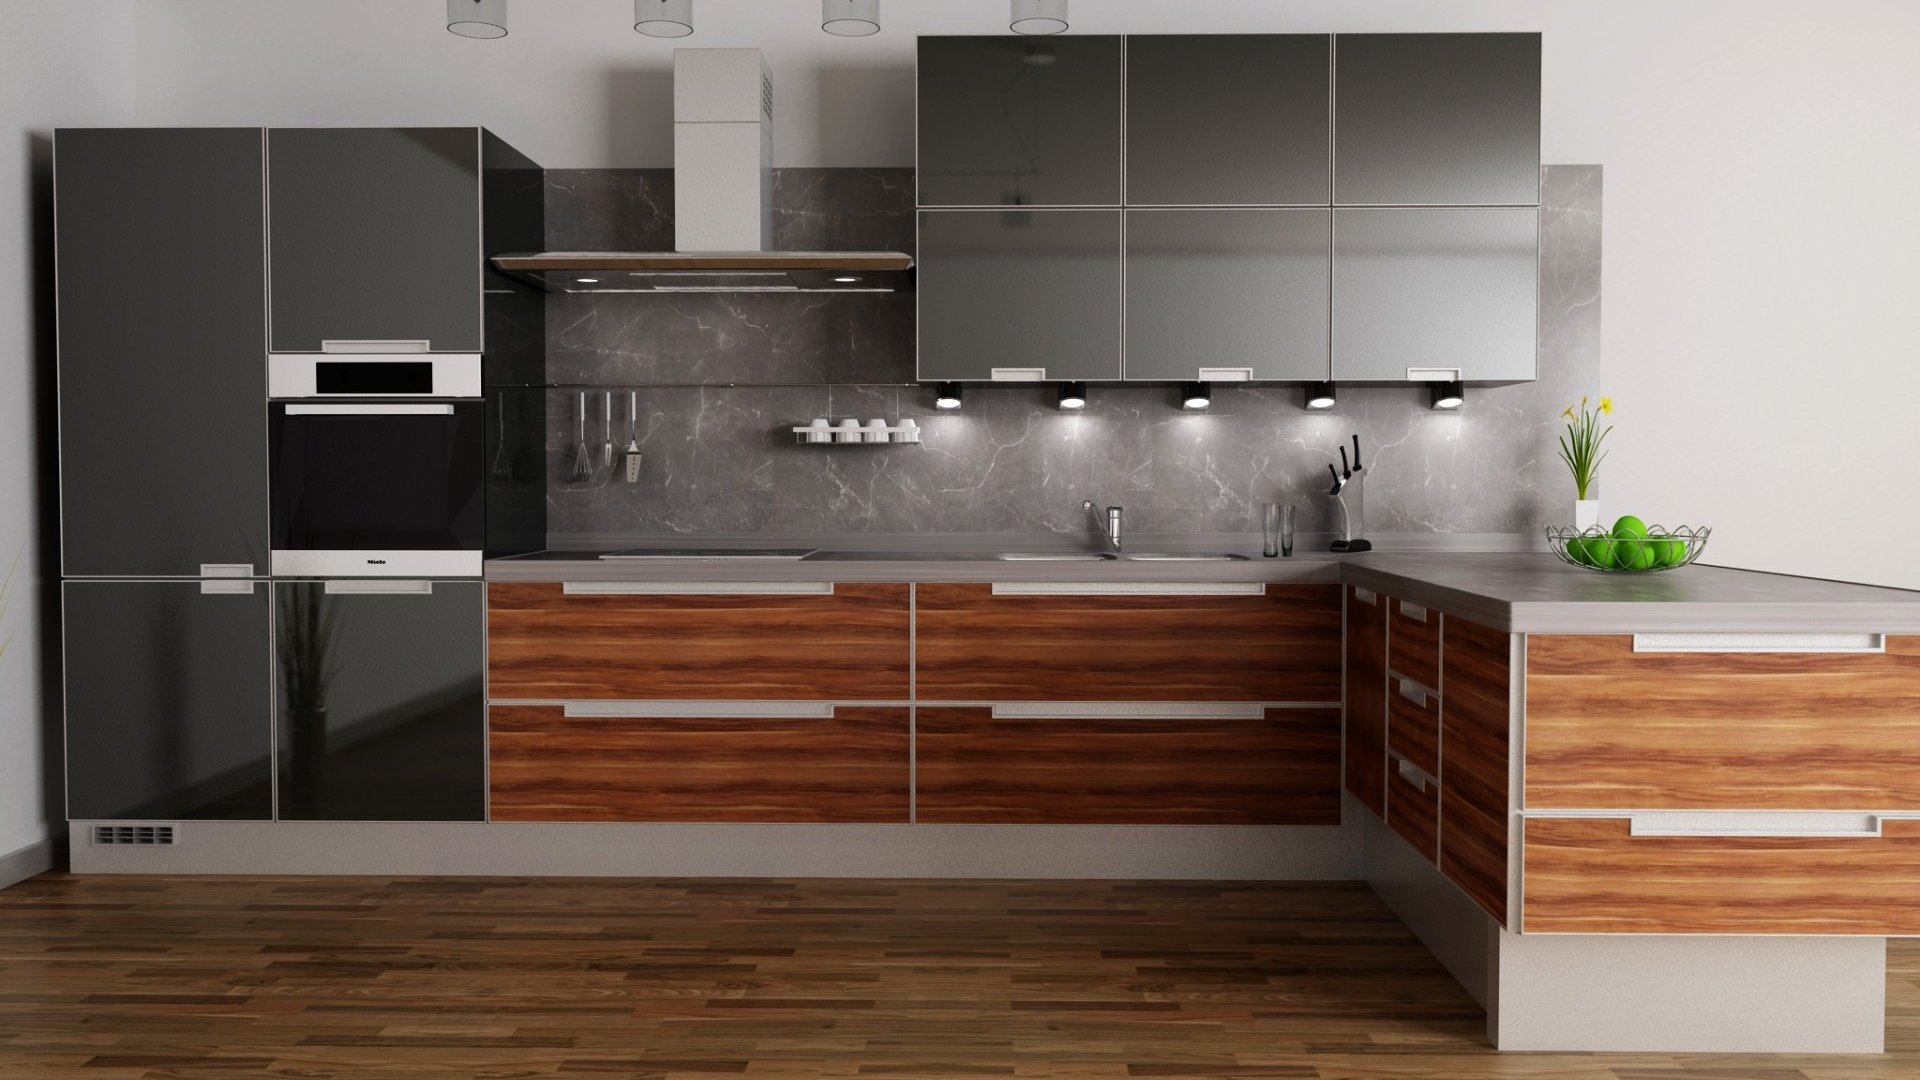 LJ kuchyně - 3D grafický návrh zdarma